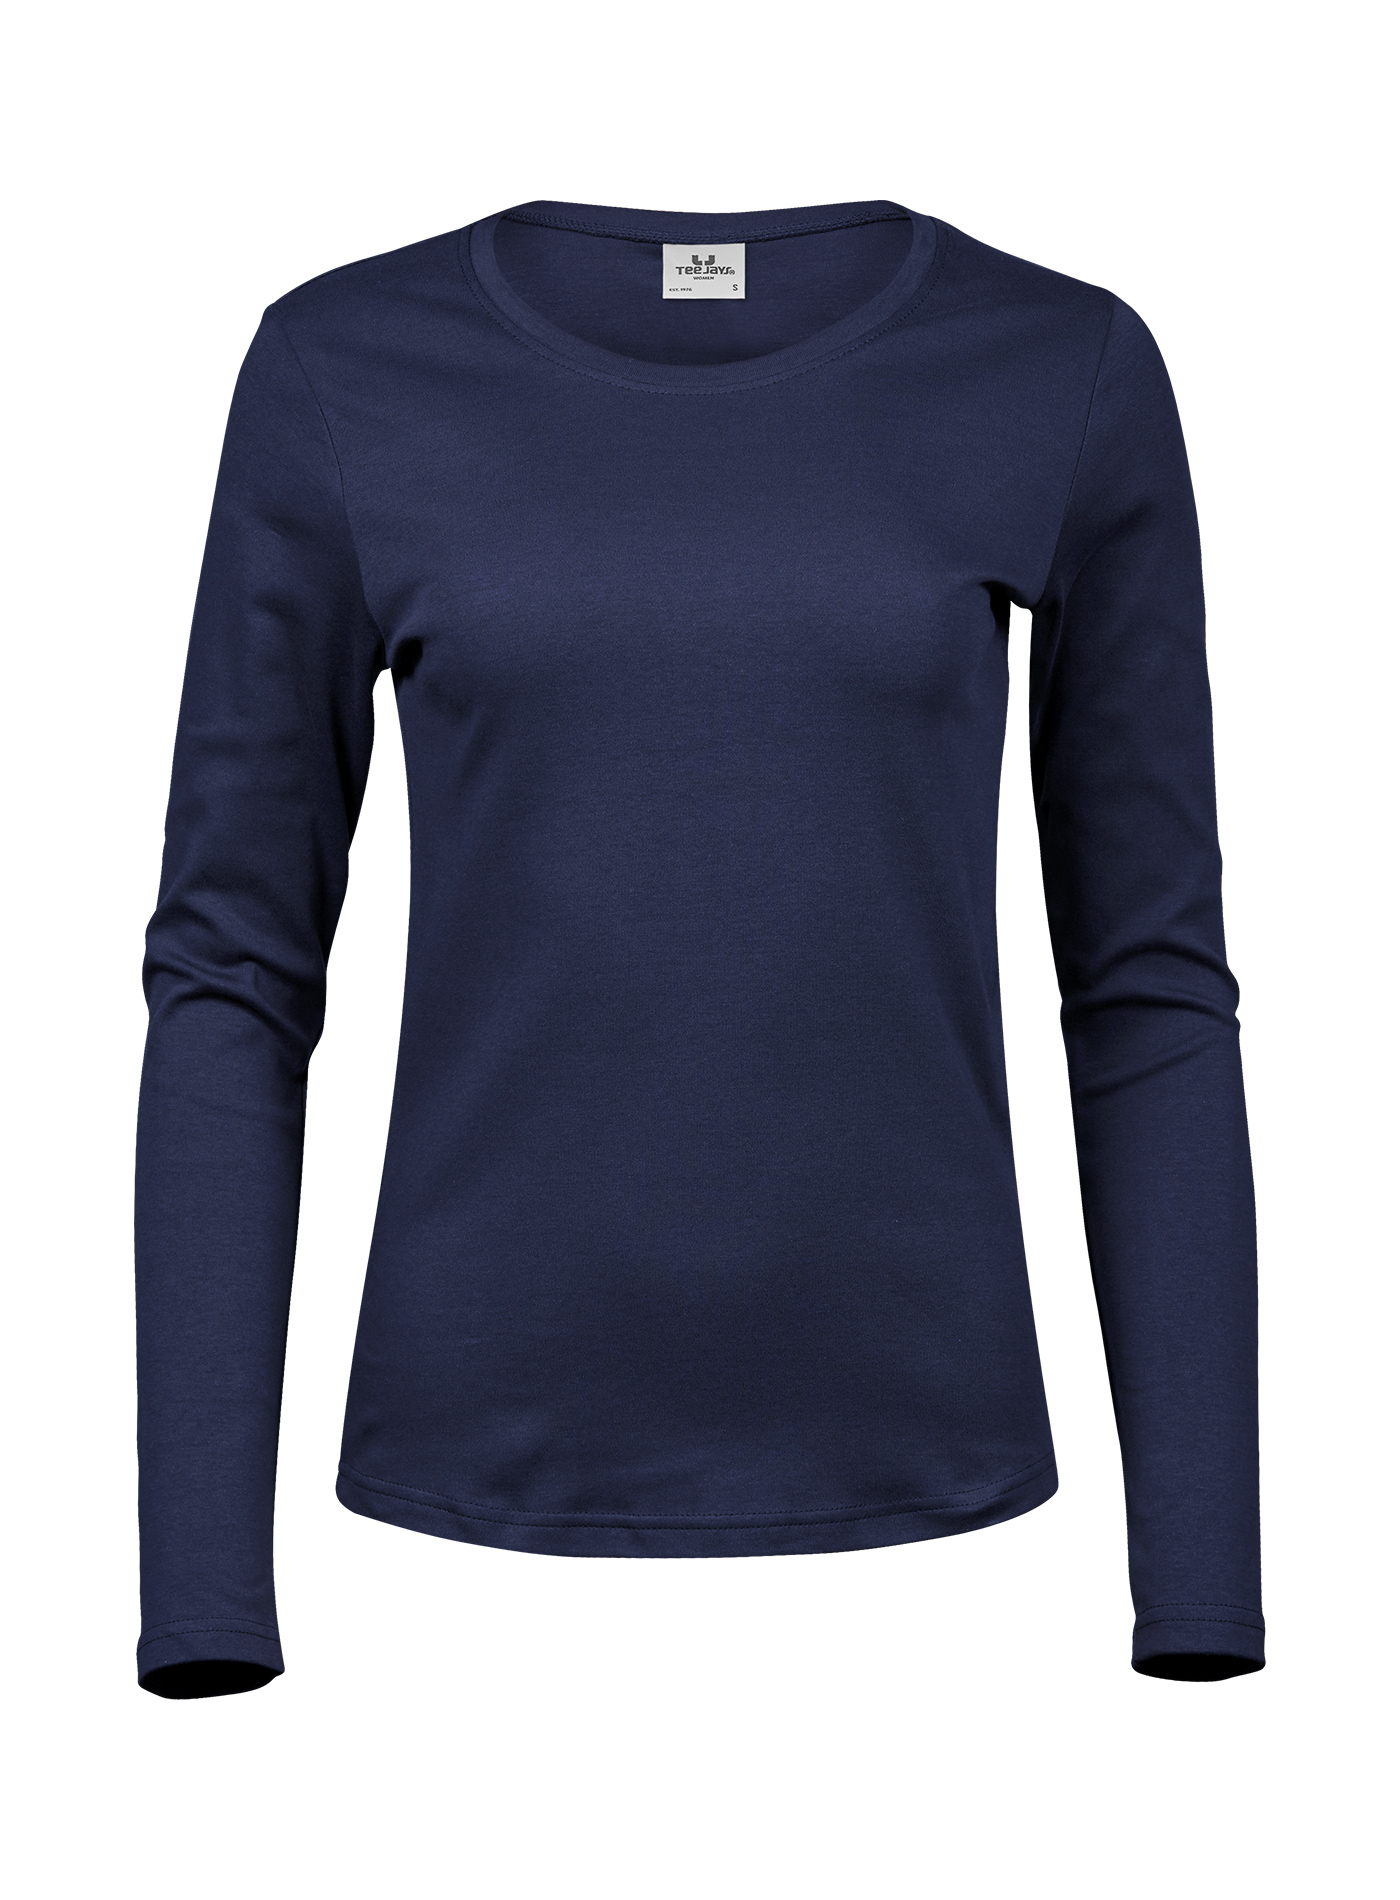 Dámské tričko s dlouhými rukávy Tee Jays Interlock - Námořní modrá M